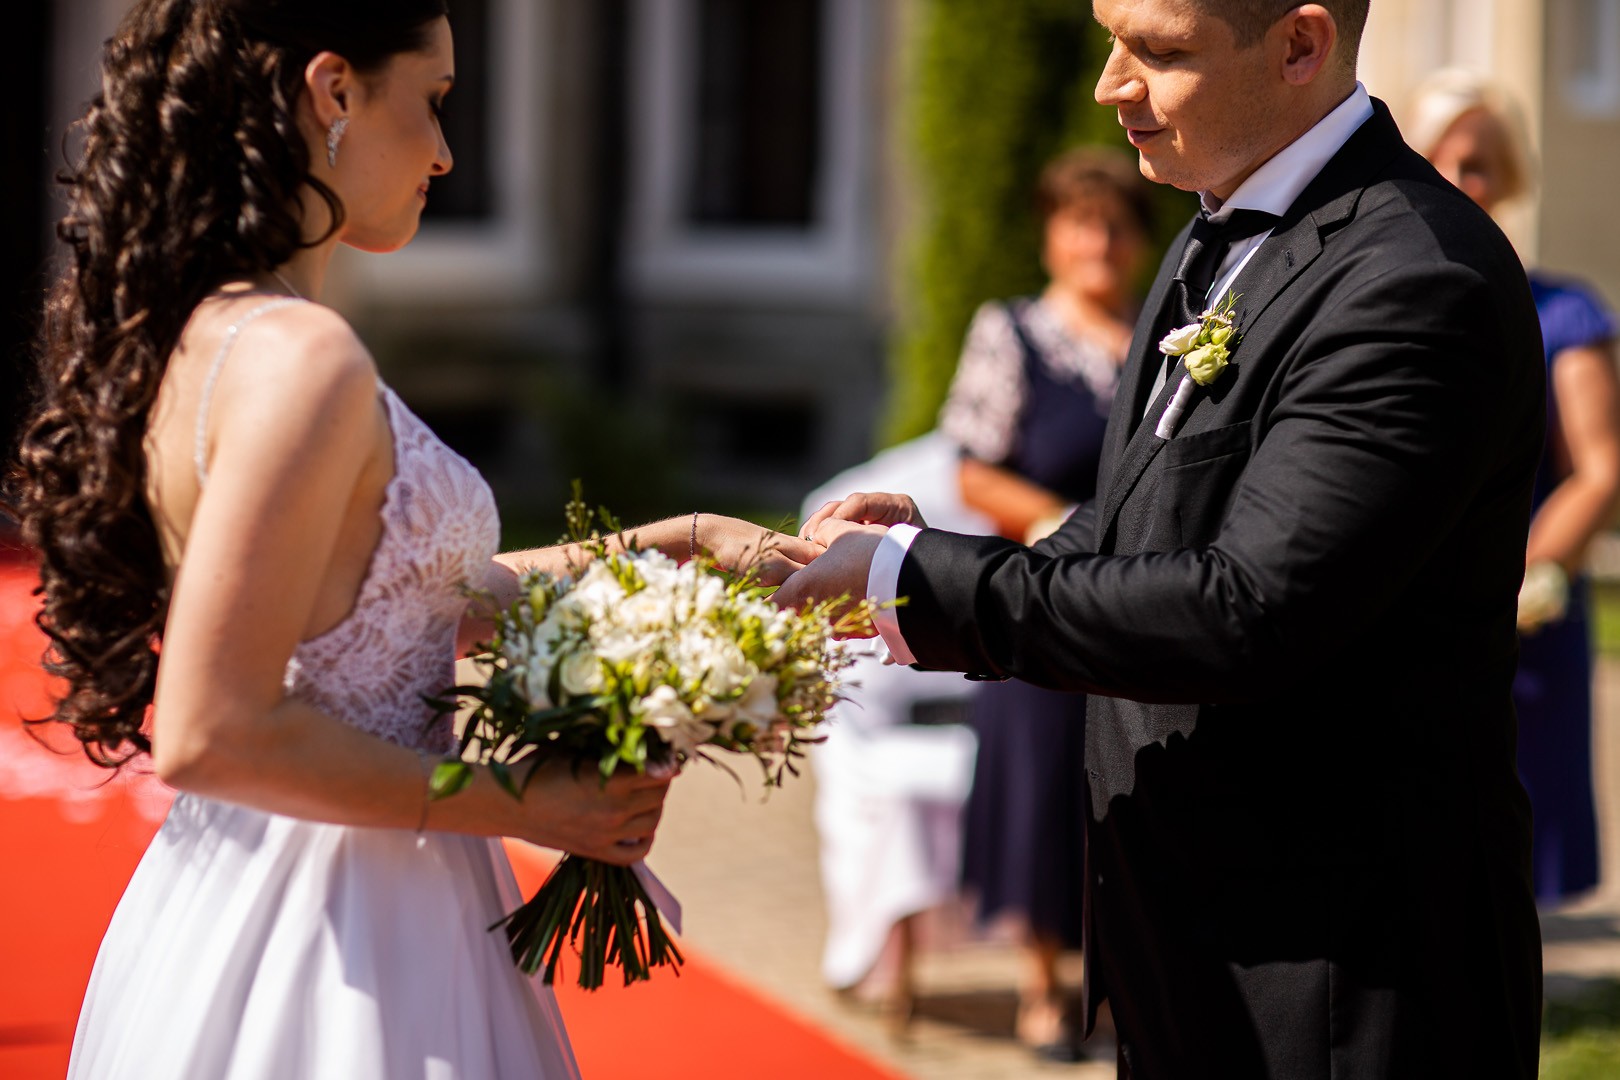 Picturesque dream wedding of Kloudy & Michal in Hluboká nad Vltavou. - 0163.jpg